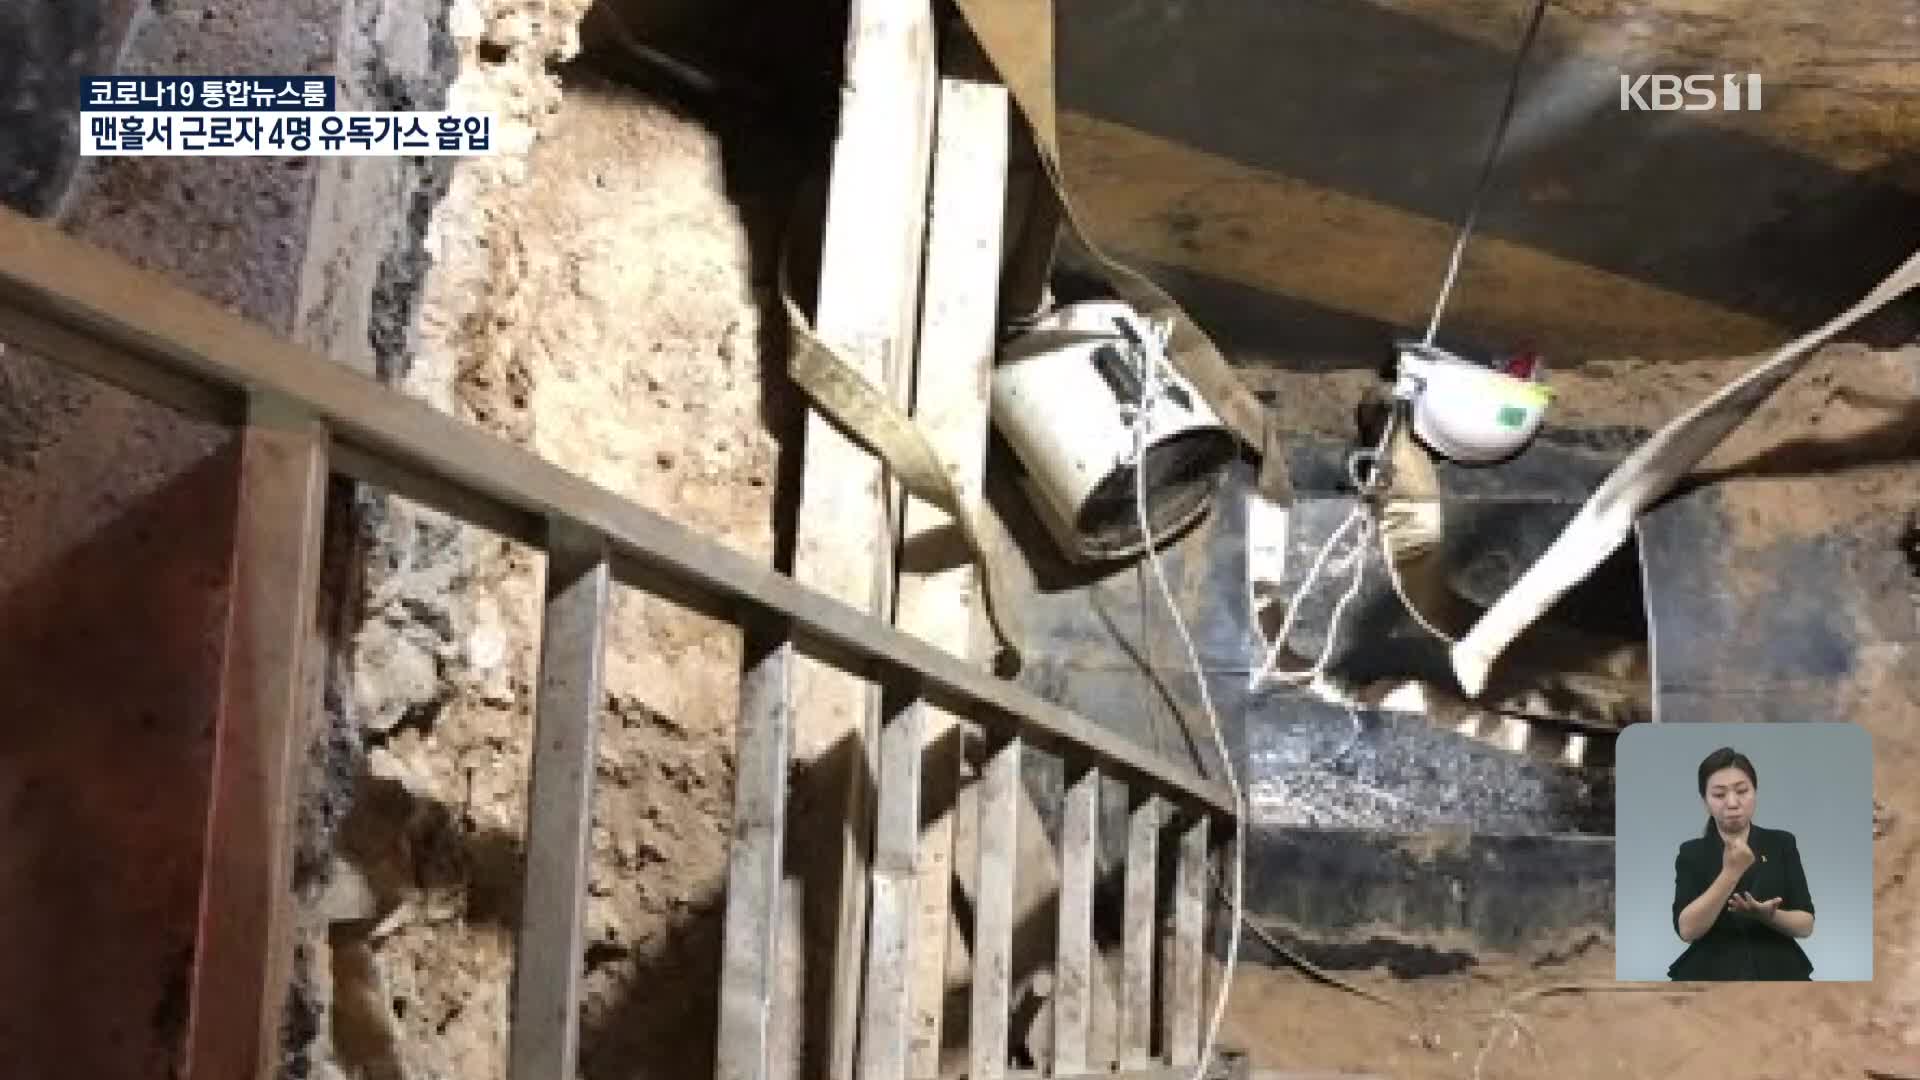 맨홀에서 작업하던 4명 유독가스 흡입…거푸집 무너져 1명 숨져